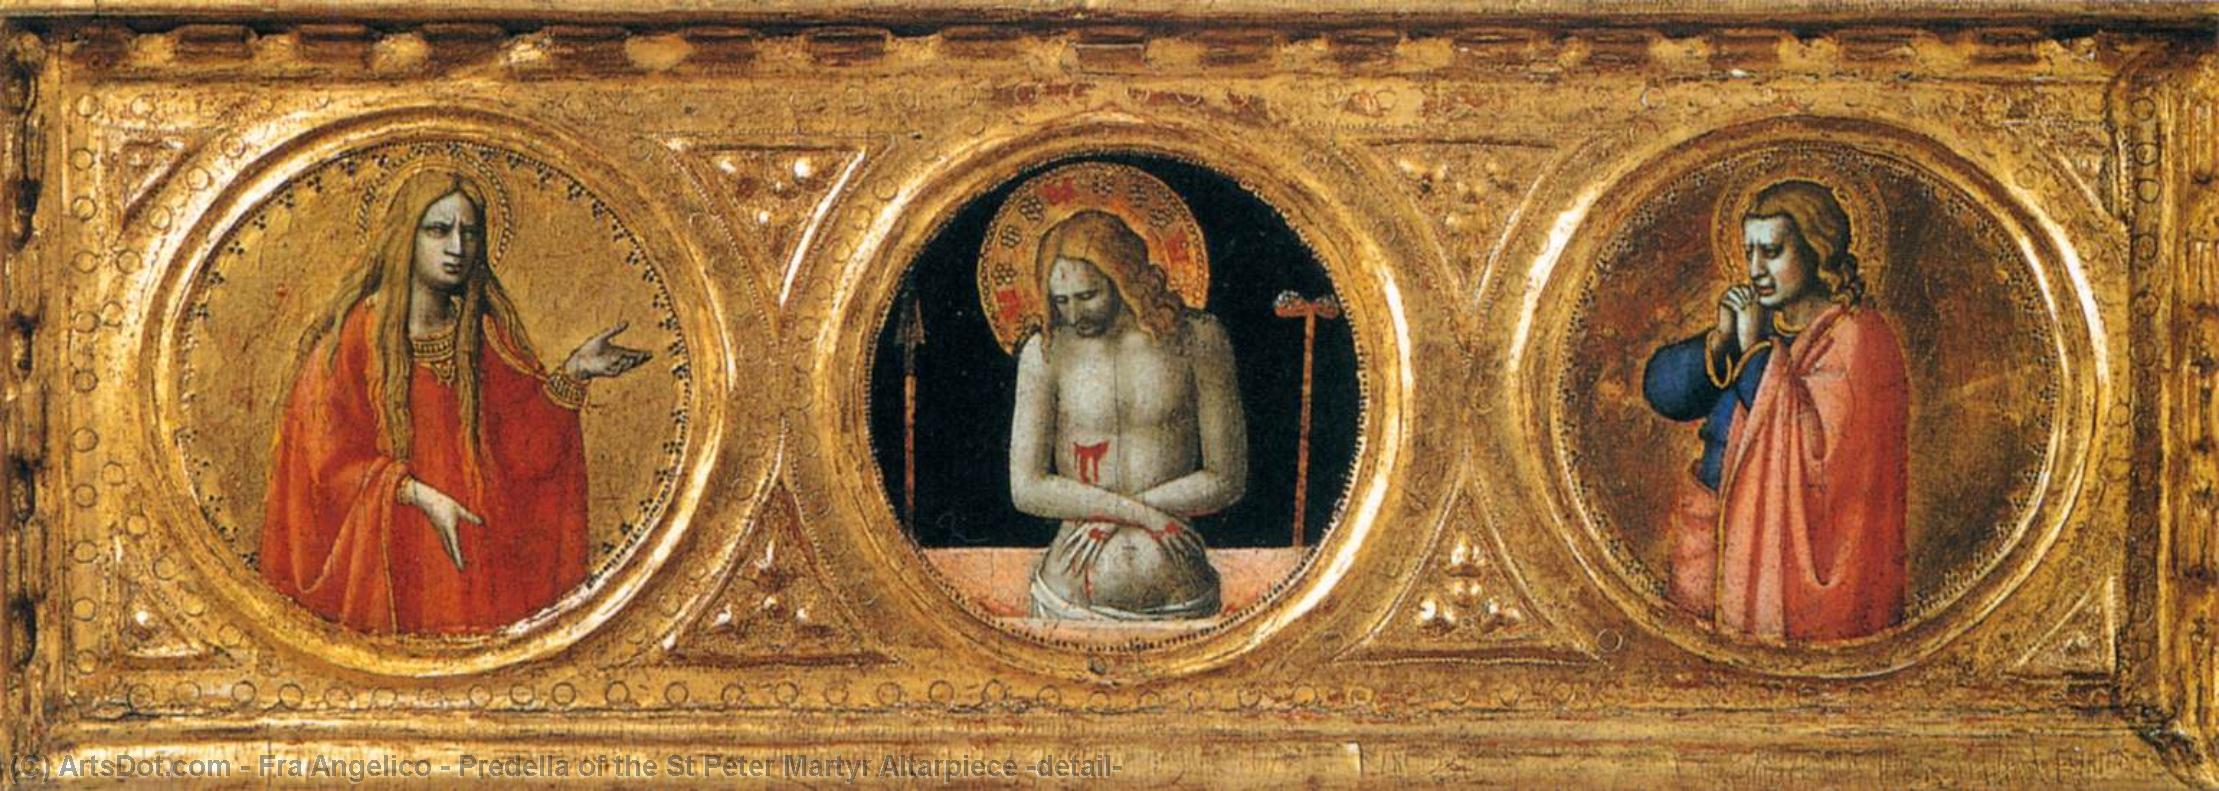 順序 絵画のコピー セント・ピーター・マーティル・アルターピース(ディテール)のプレデラ, 1427 バイ Fra Angelico (1395-1455, Italy) | ArtsDot.com